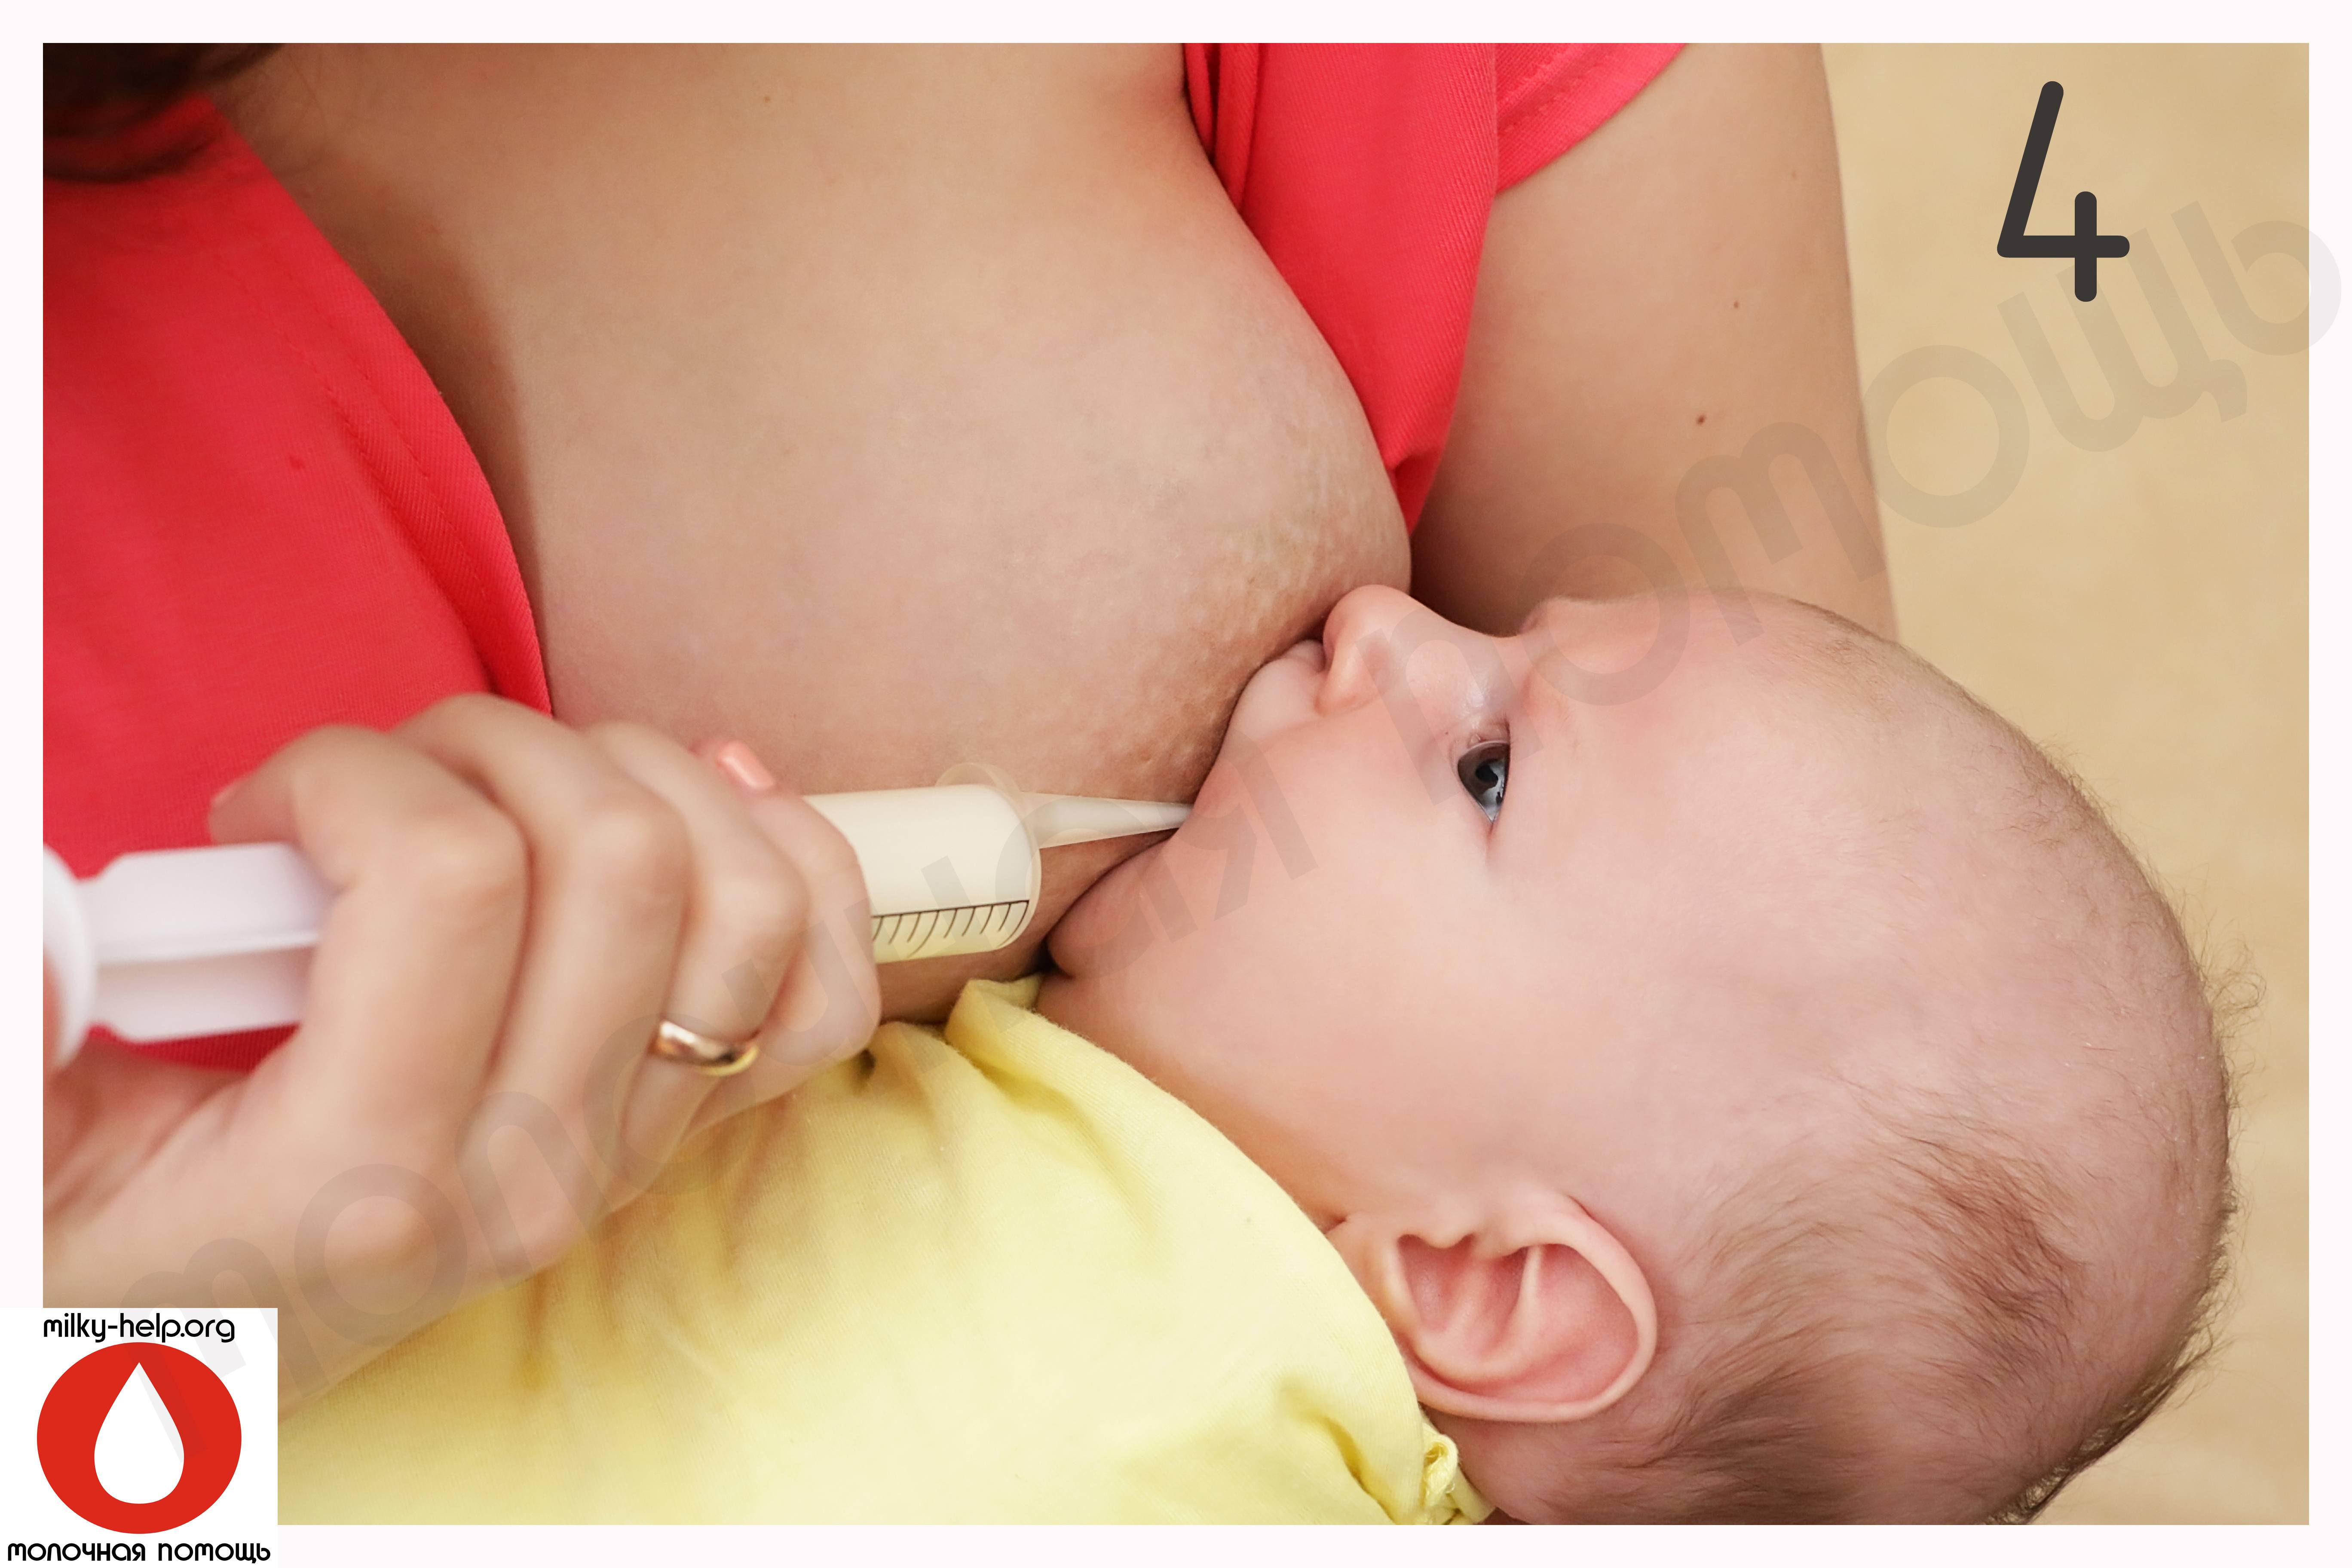 Ребенок не берет грудь: что делать, если новорожденный отказывается есть и психует, истинный и ложный отказ, почему плохой аппетит у грудничка